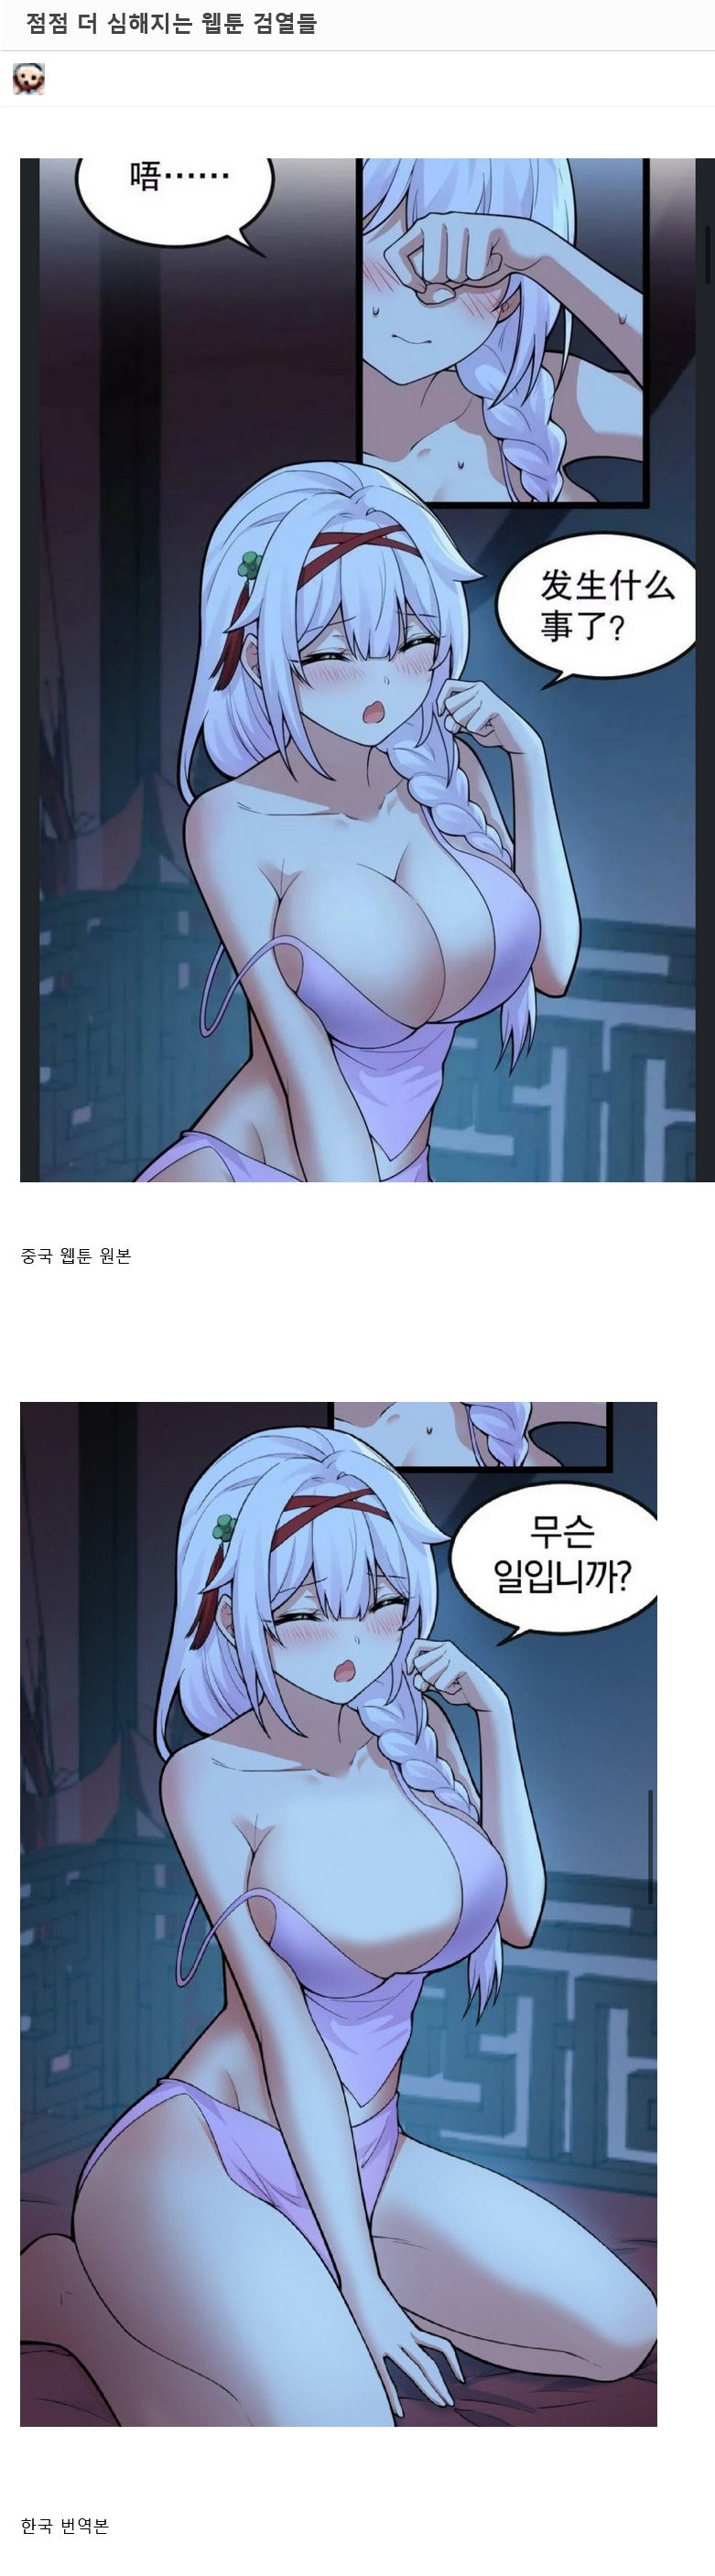 소름돋는 최근 한국 웹툰 검열 ㄷㄷ